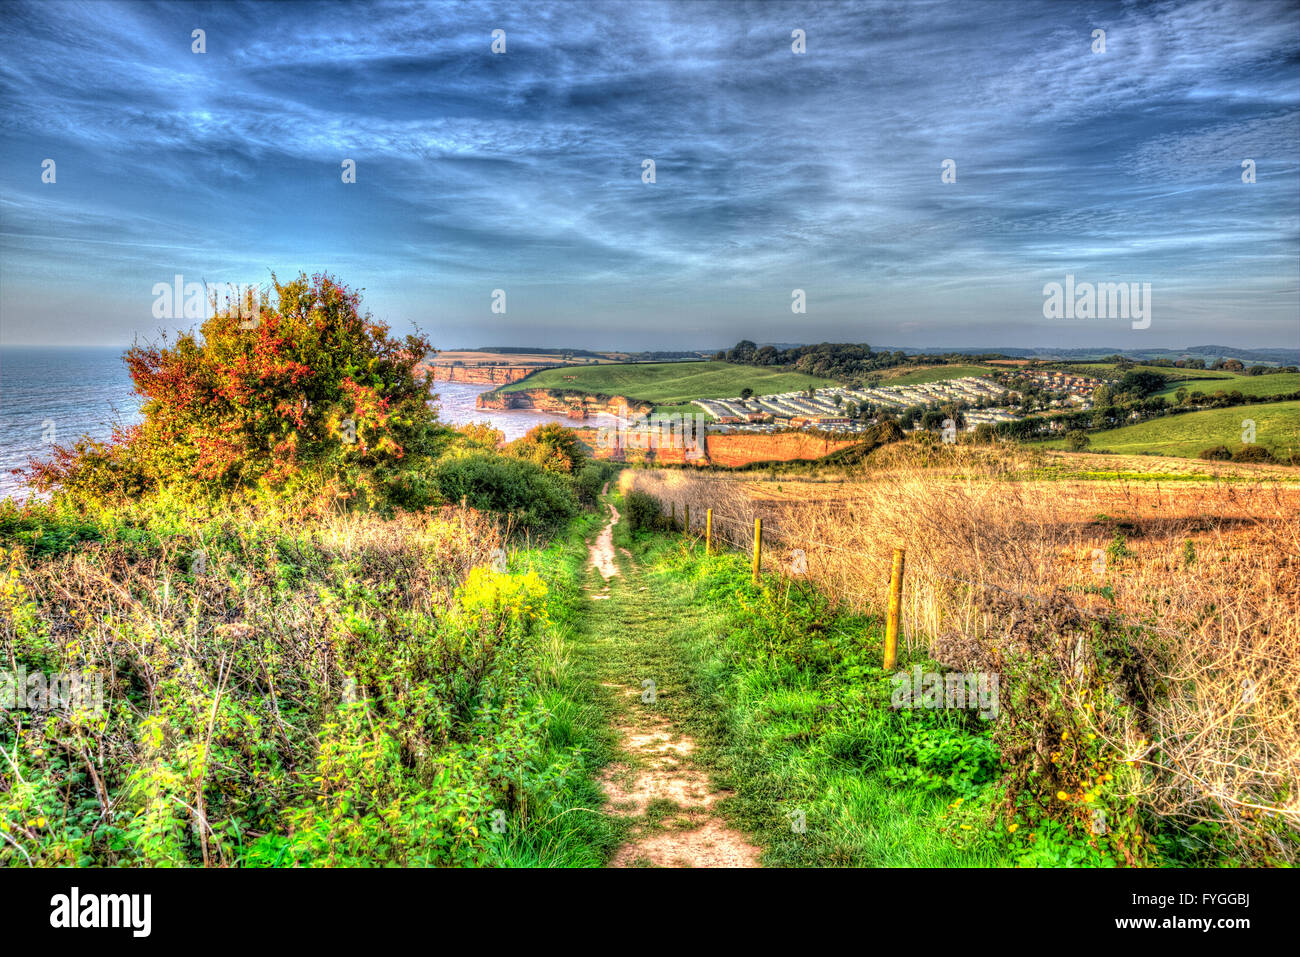 Chemin de la côte à pied à Devon, Angleterre Royaume-uni Ladram Bay Côte Jurassique dans HDR colorés Banque D'Images